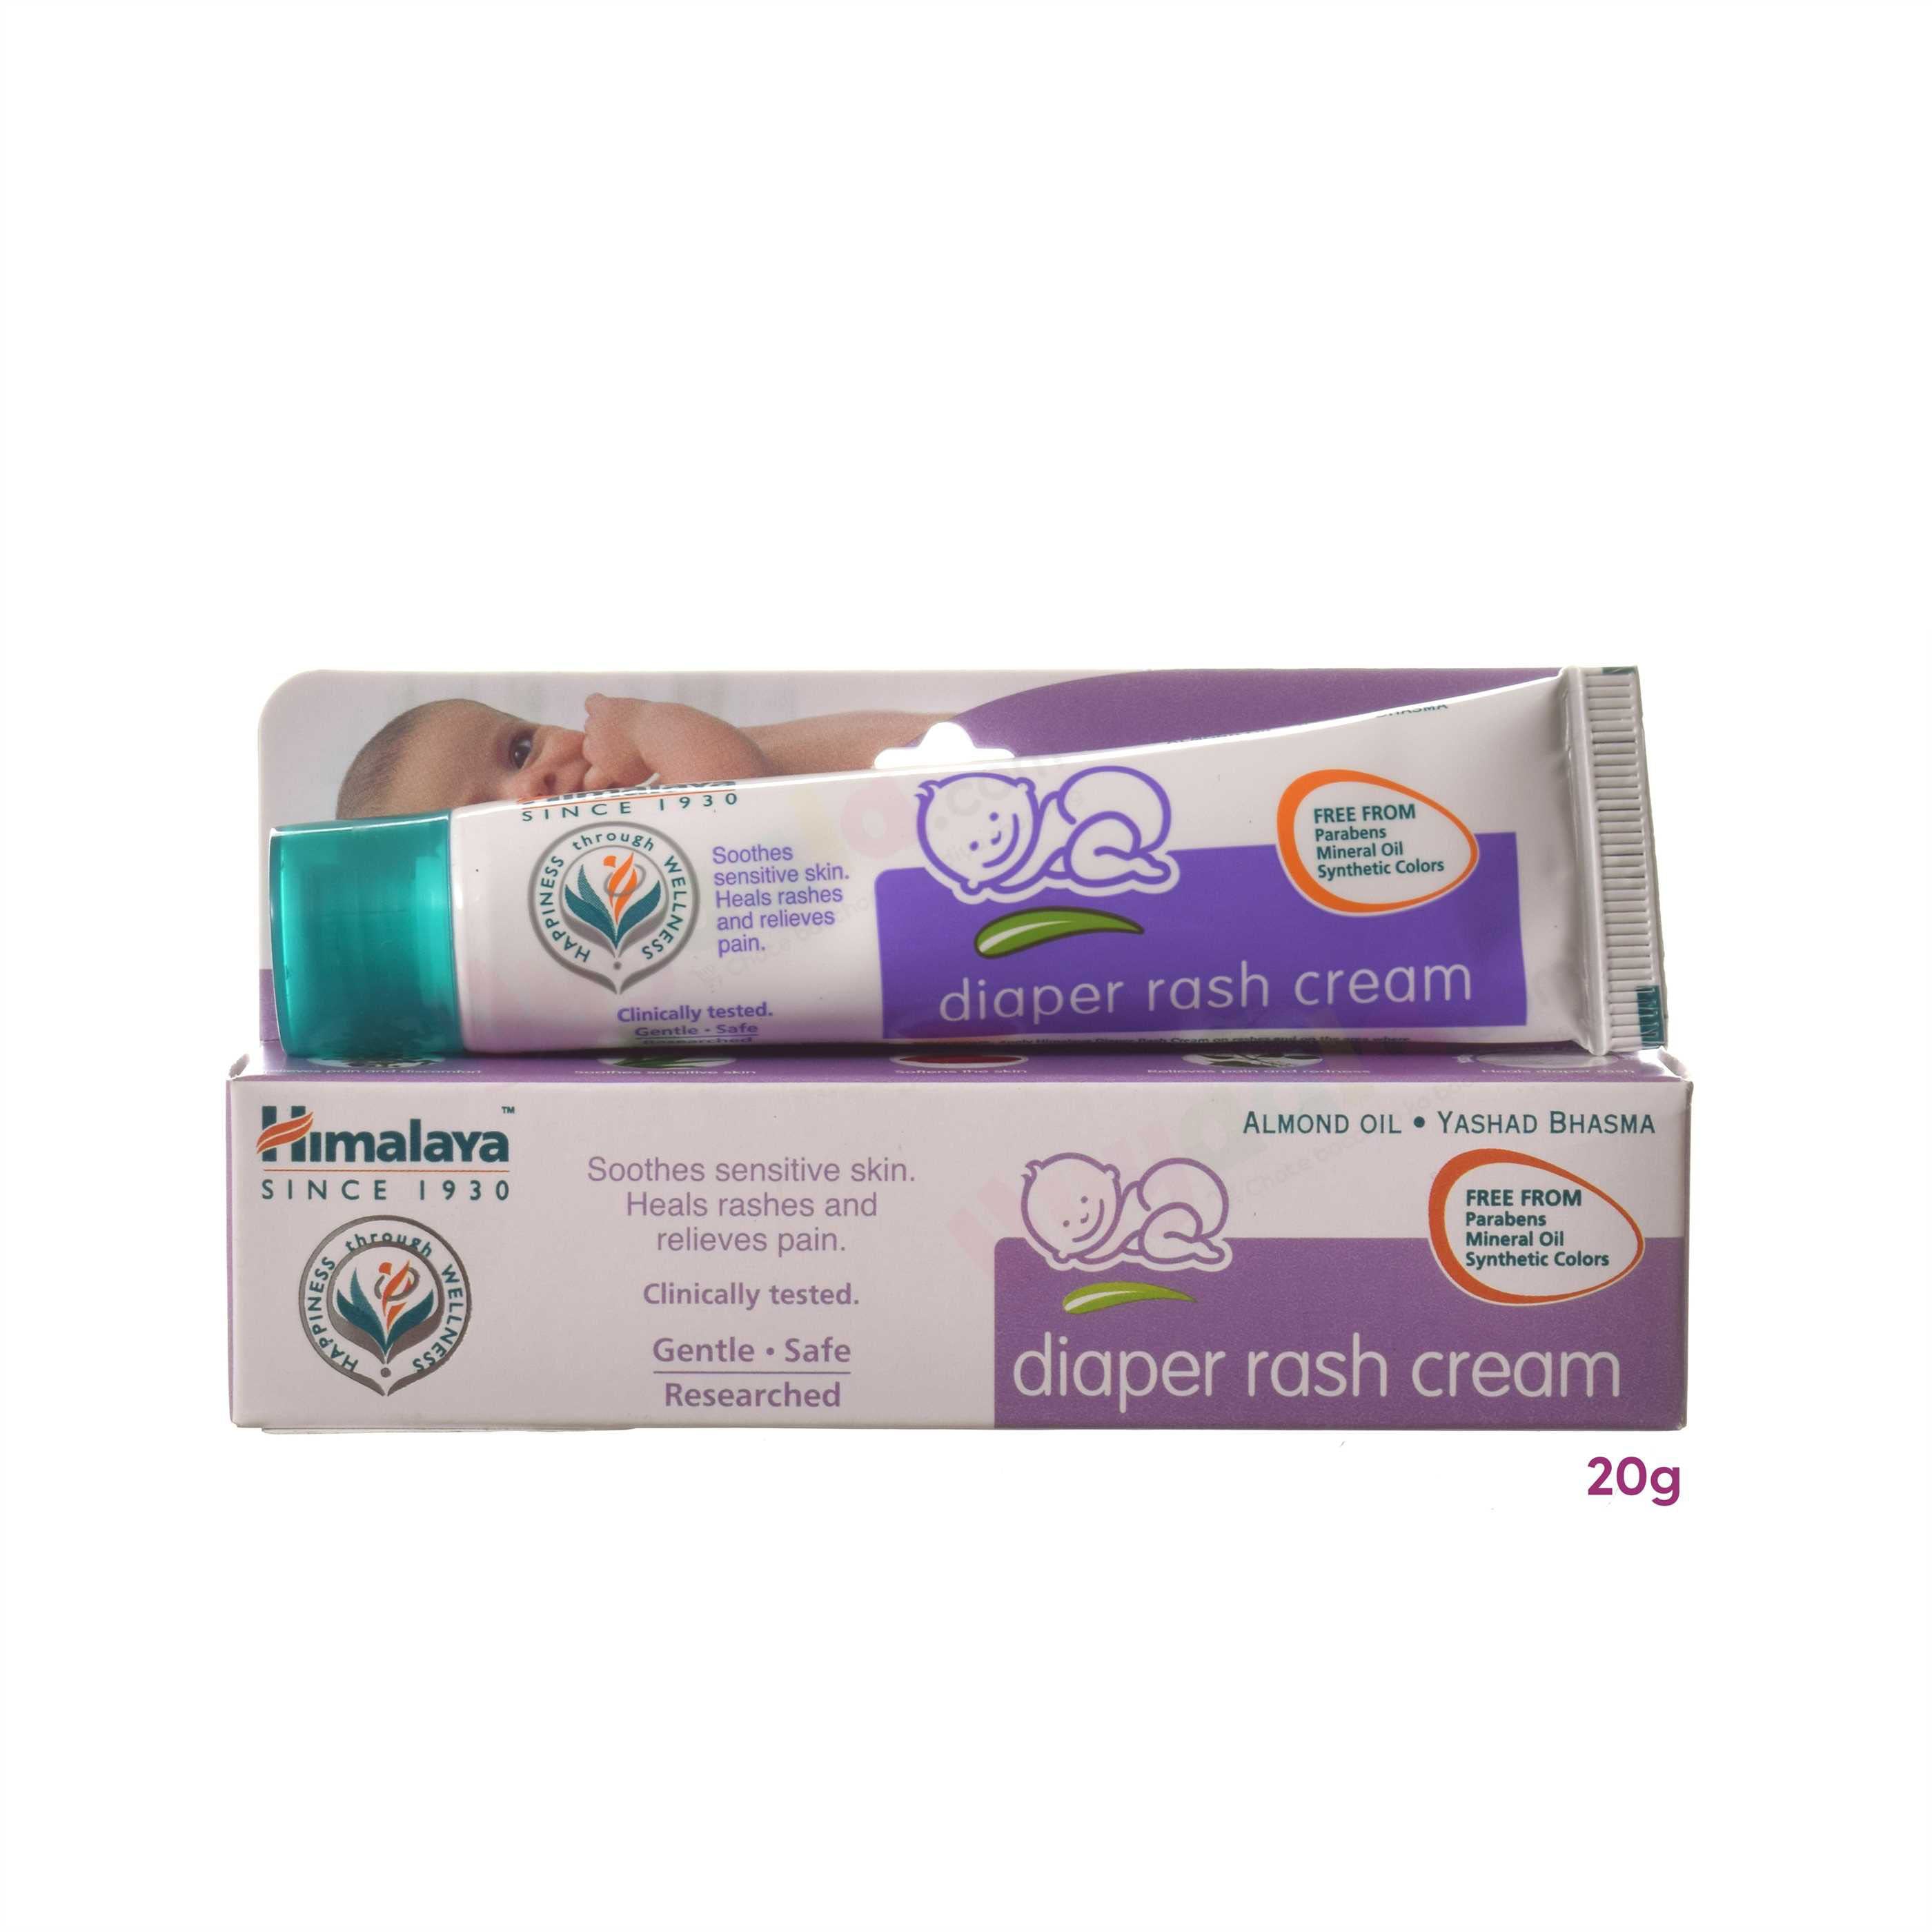 HIMALAYA Diaper rash cream - 20g